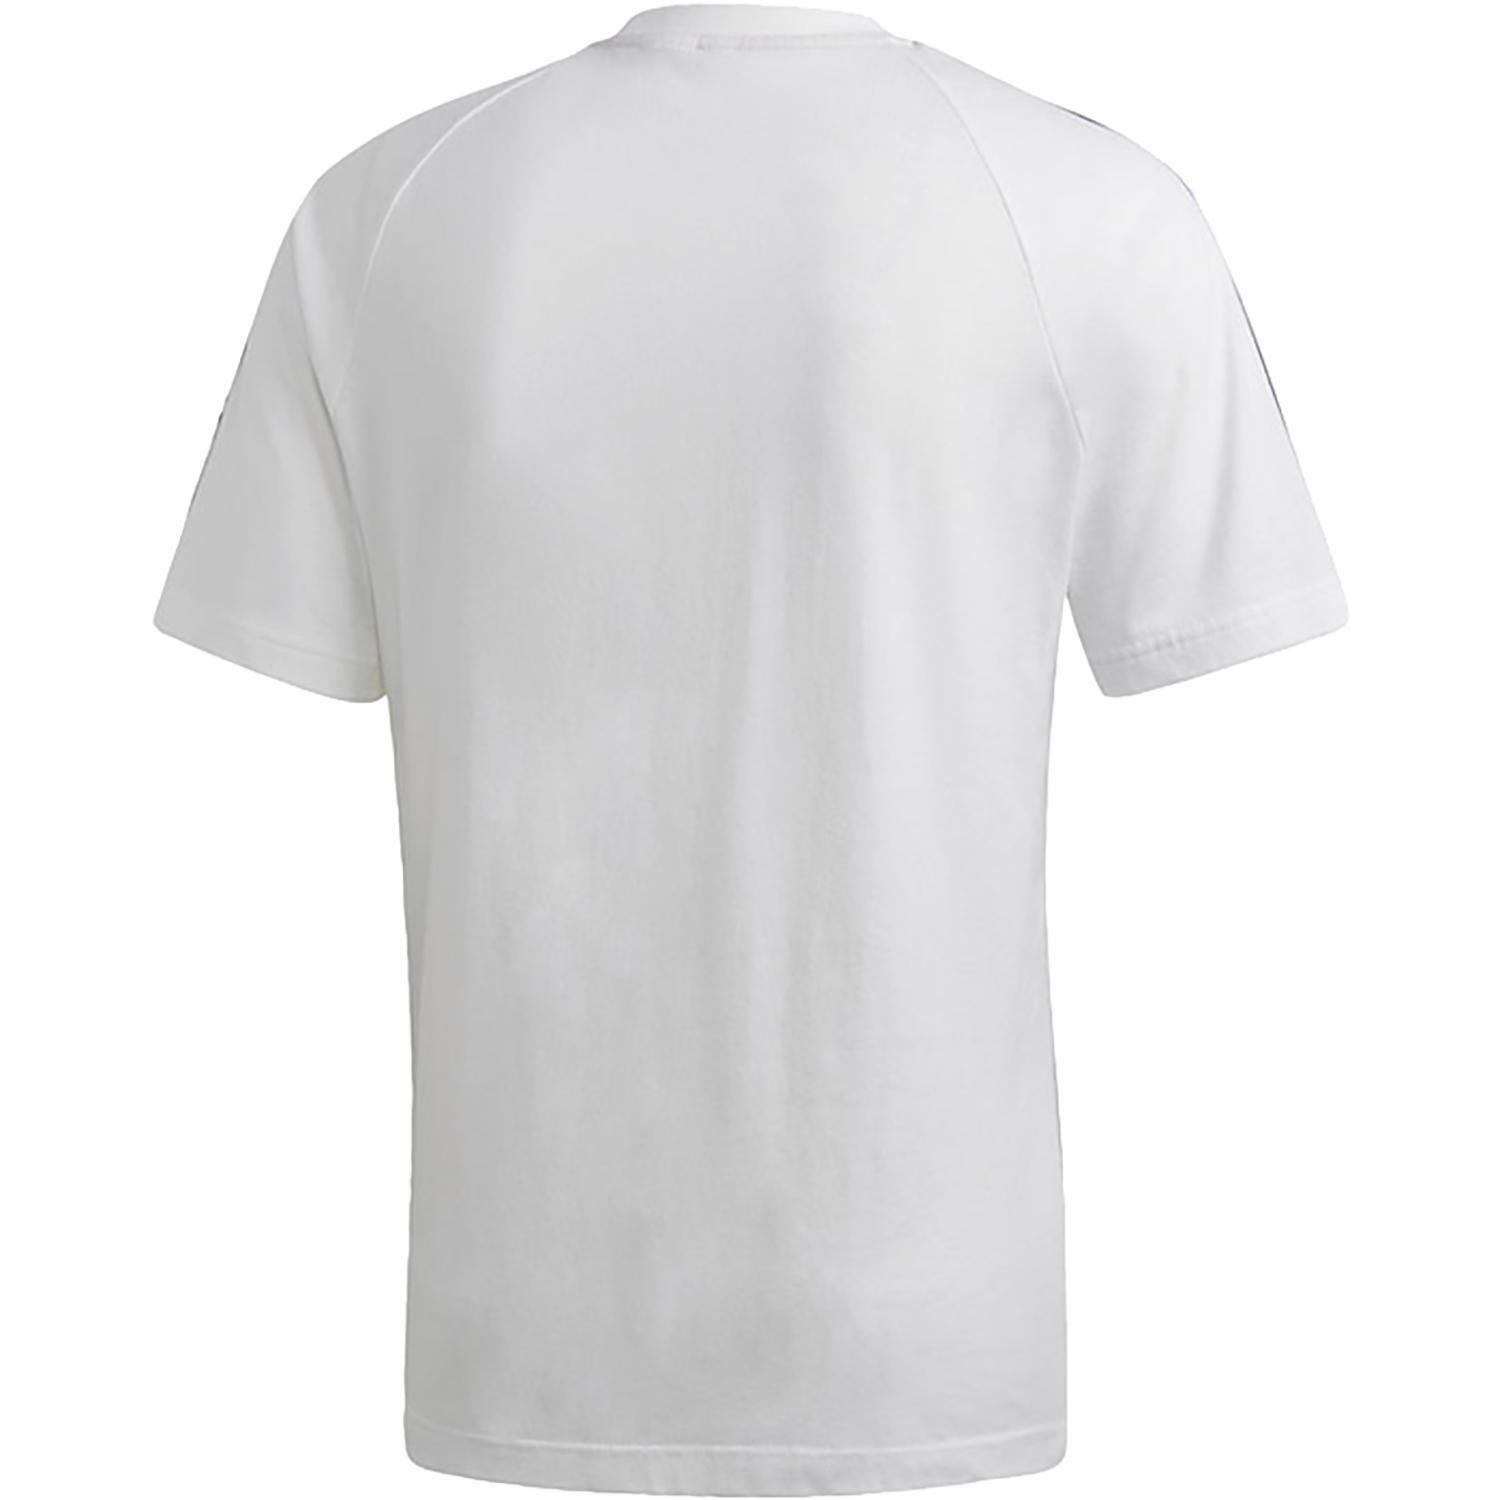 adidas adidas tan tape tee t-shirt uomo bianca dw8466